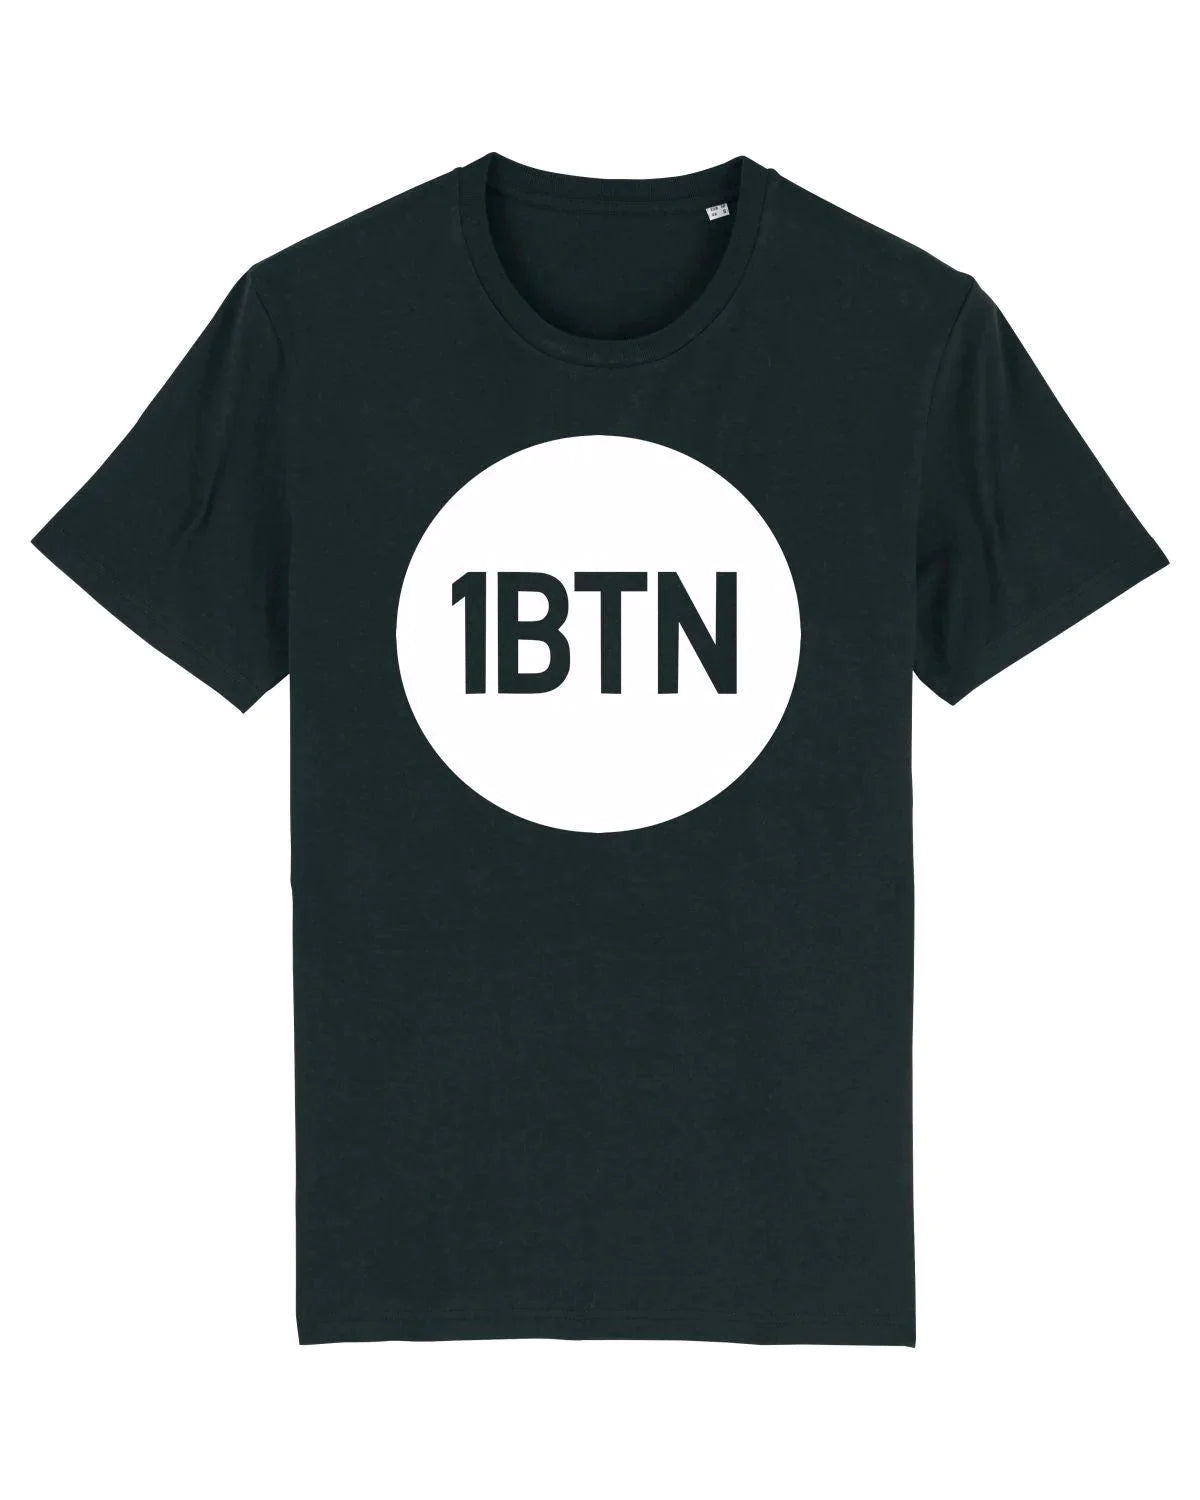 1BTN LARGE LOGO: T-Shirt Official Merchandise of 1BTN.FM (5 Colour Options) - SOUND IS COLOUR